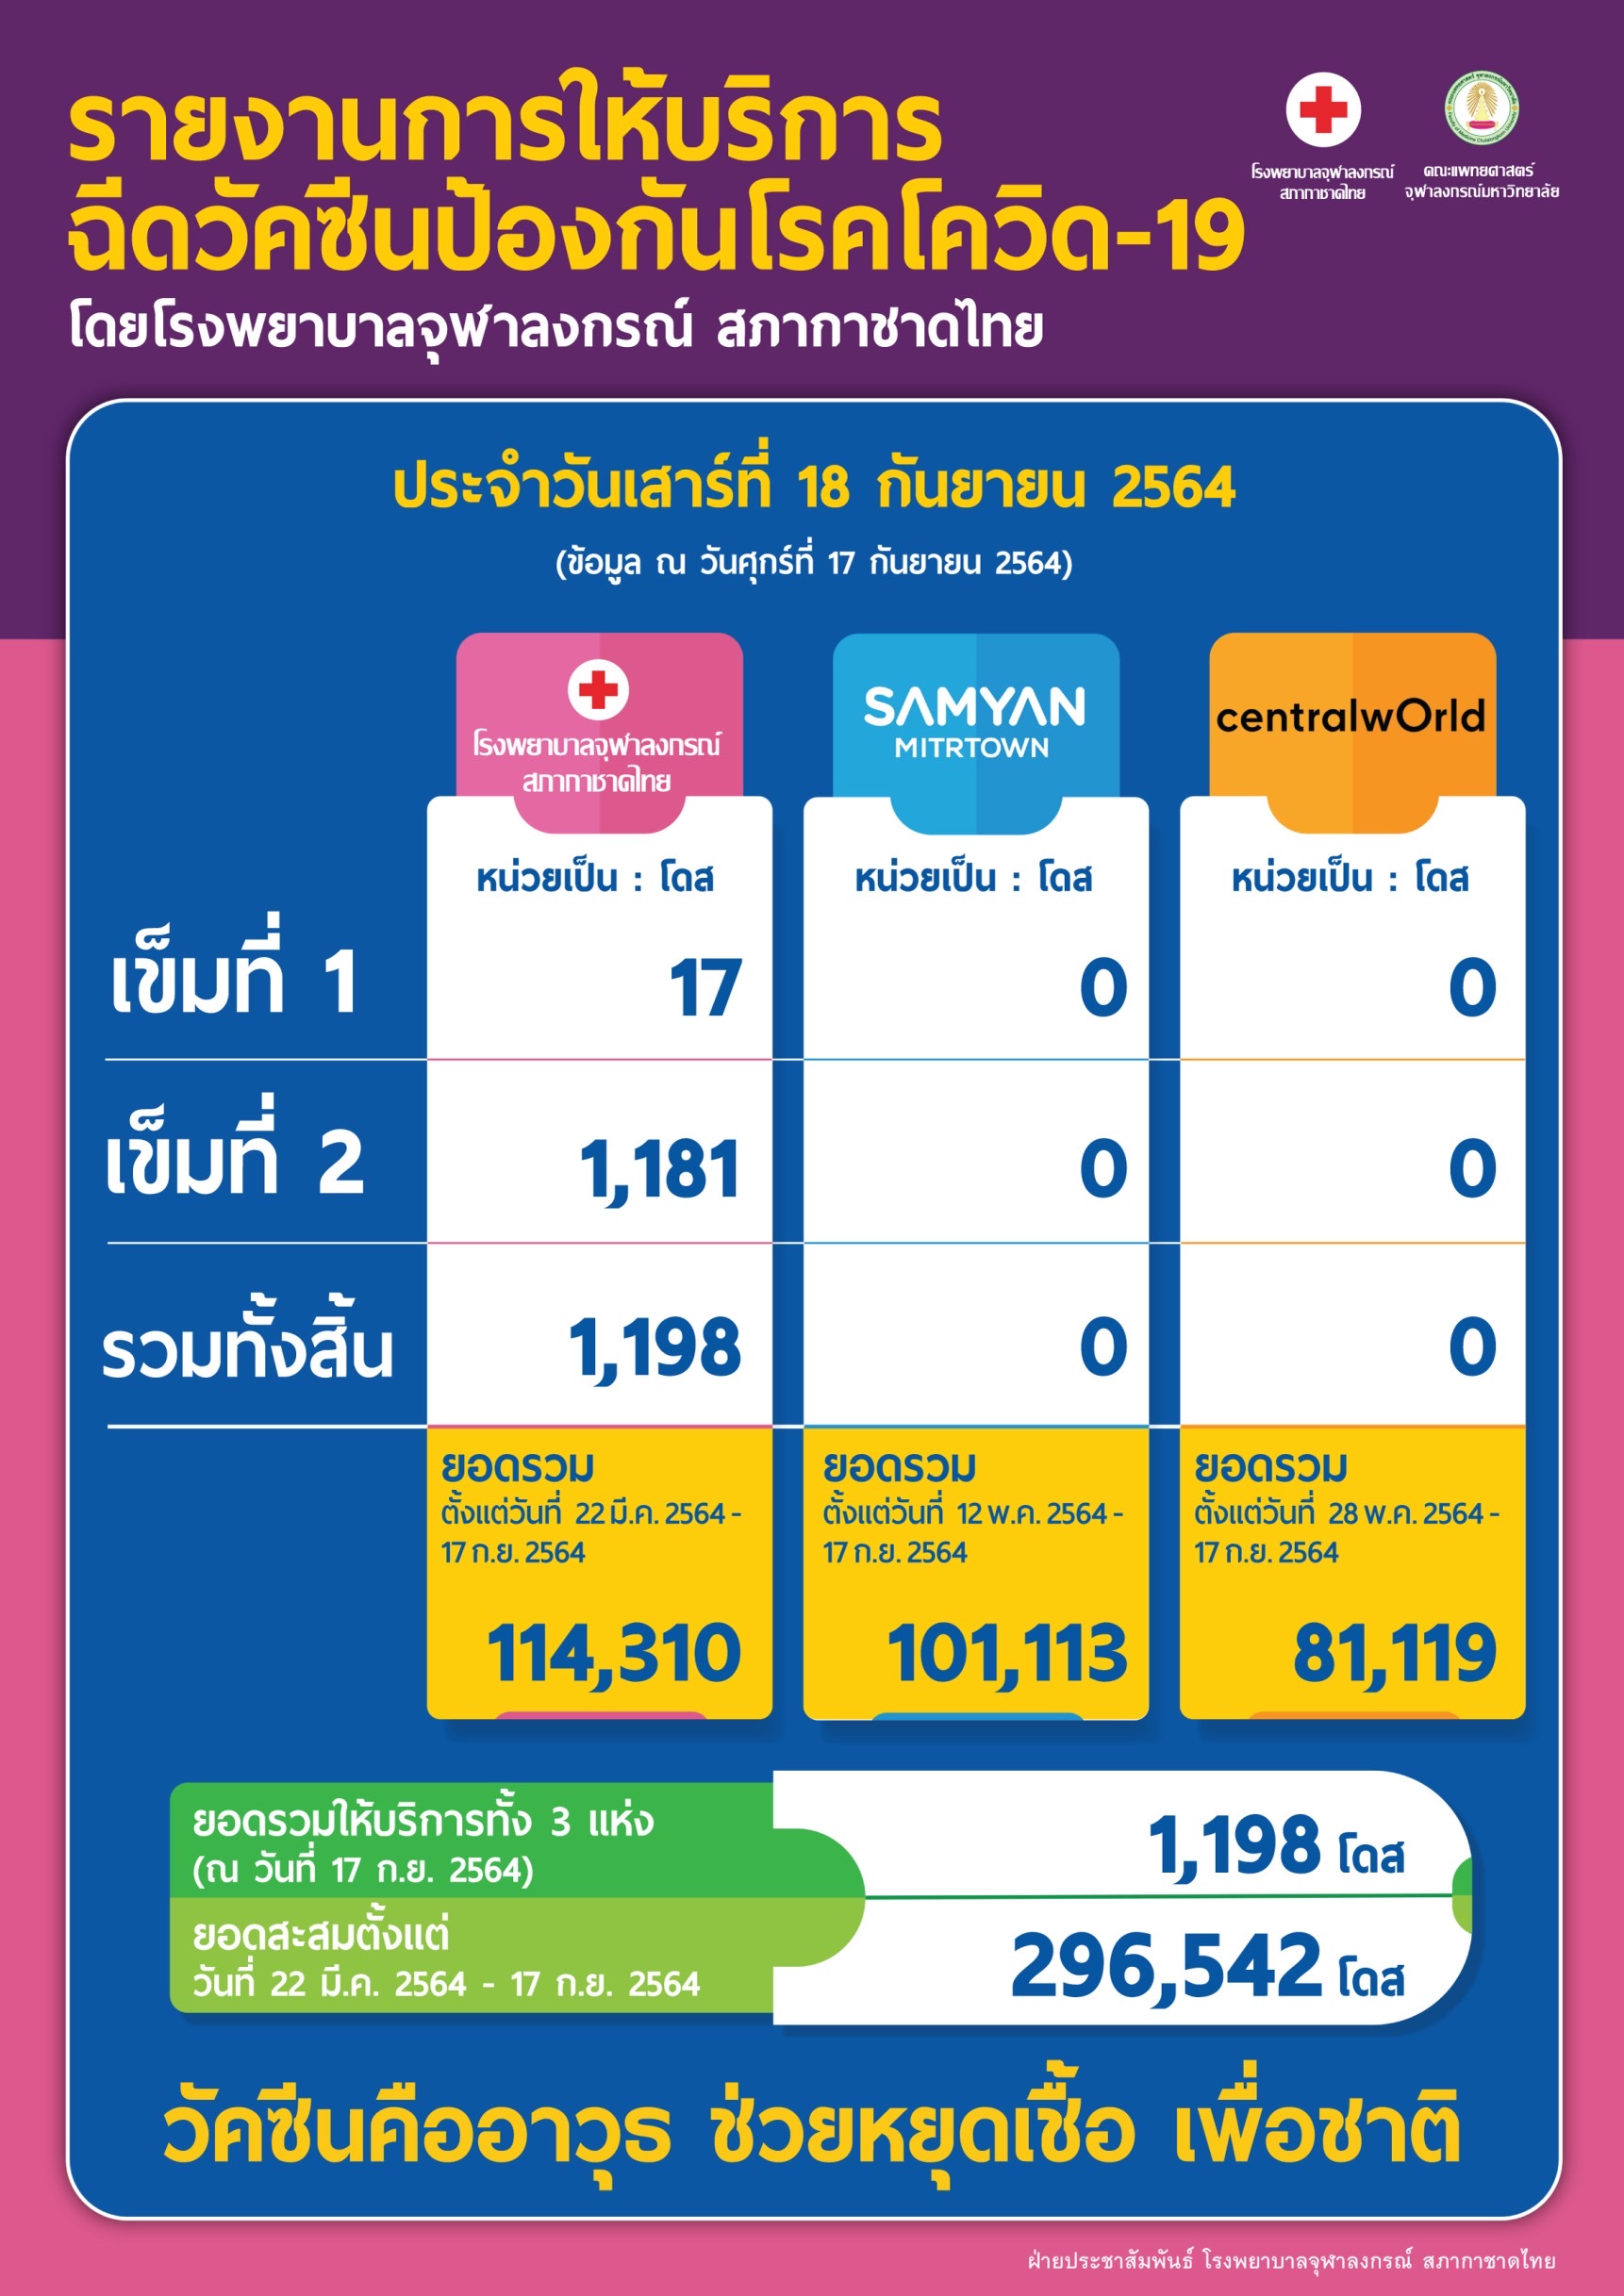 รายงานการให้บริการฉีดวัคซีนป้องกันโรคโควิด-19 โดยโรงพยาบาลจุฬาลงกรณ์ สภากาชาดไทย ประจำวันเสาร์ที่ 18 กันยายน 2564